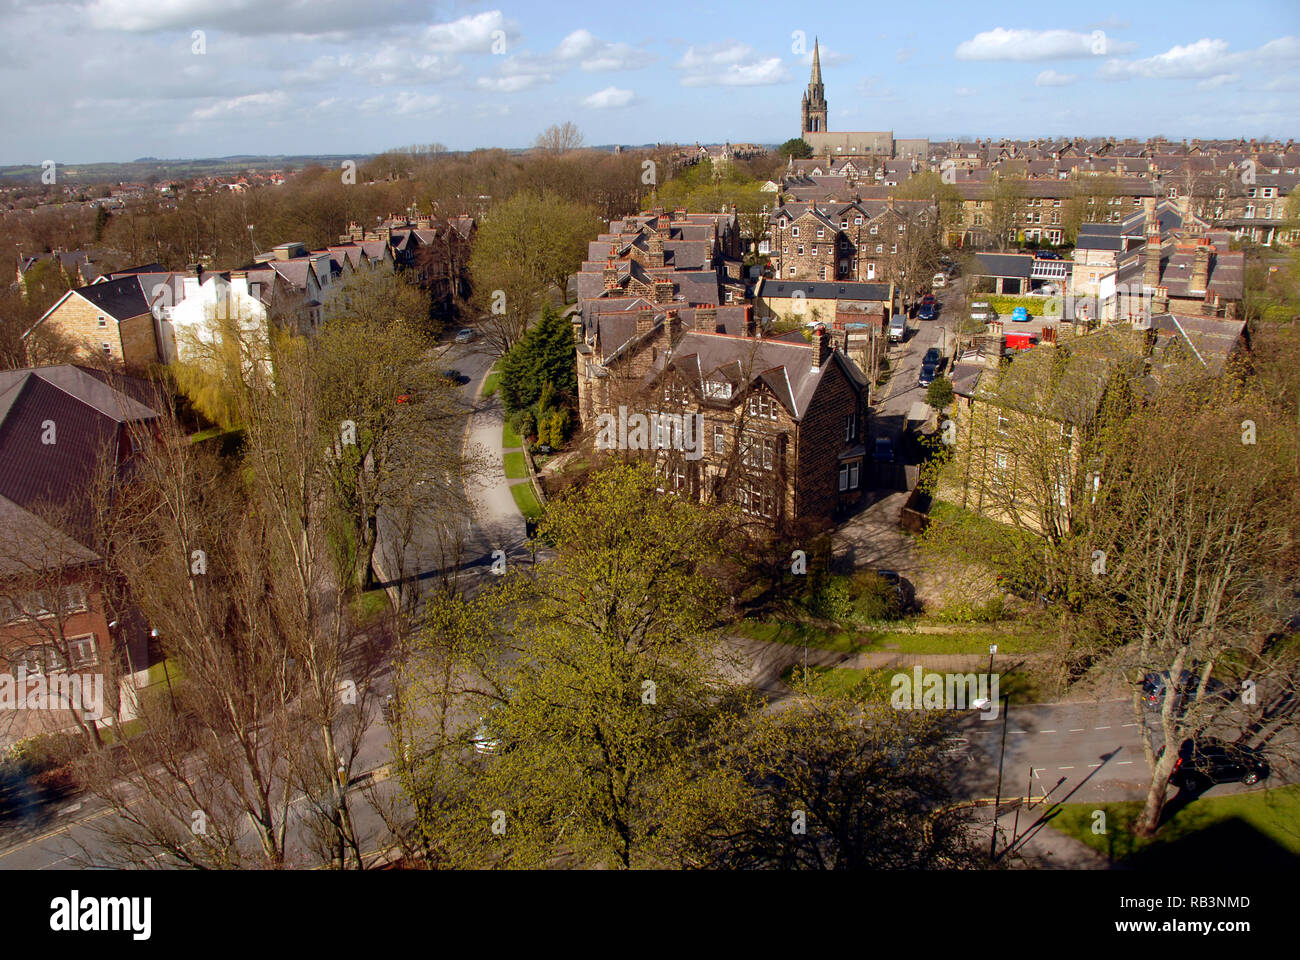 Zona residencial, con la iglesia con campanario en distancia, Harrogate, Yorkshire, Inglaterra Foto de stock